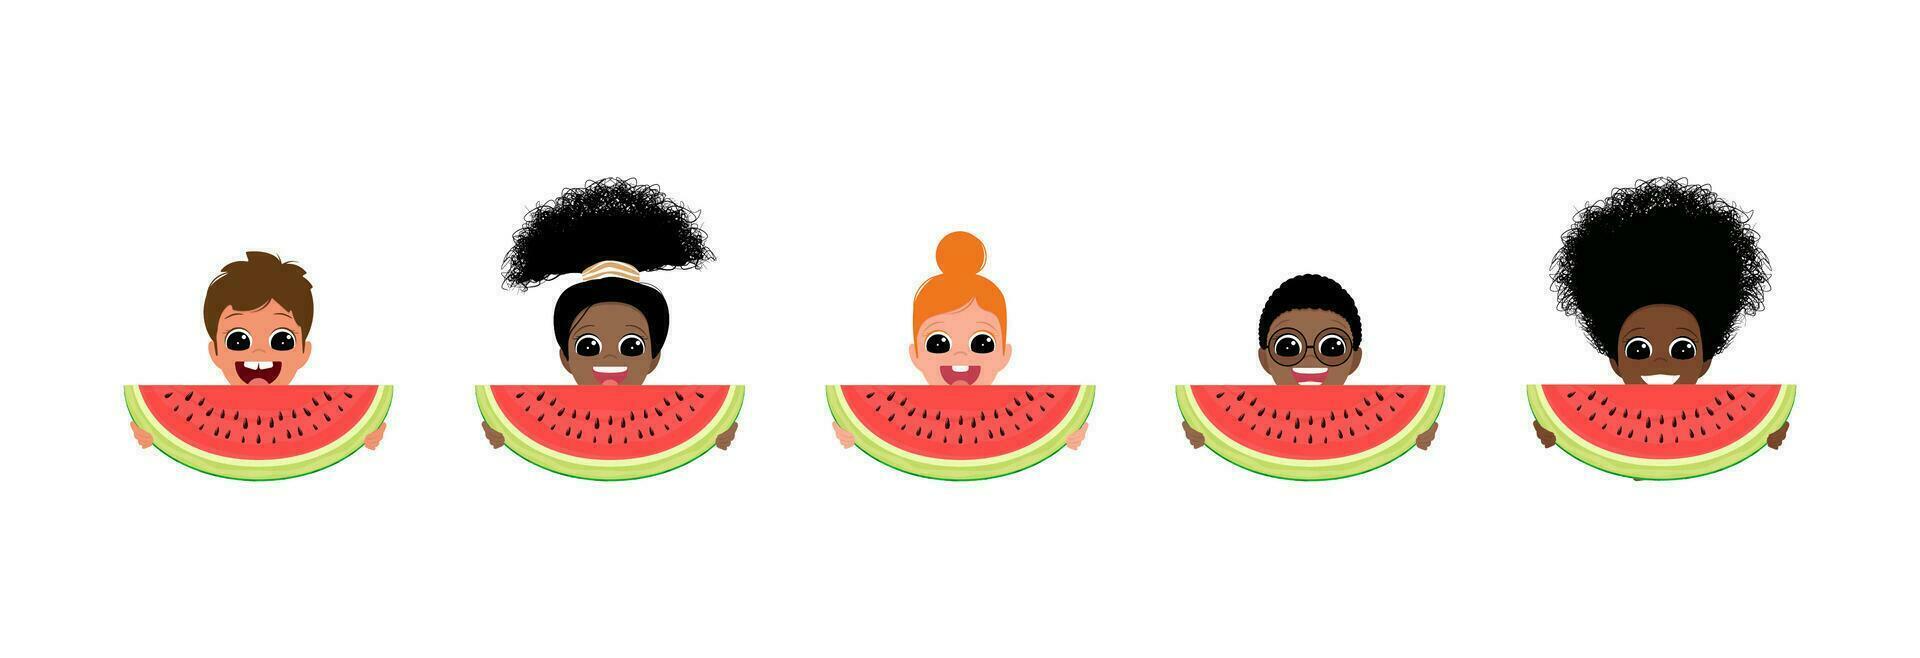 Kinder Essen Wassermelone. vektor